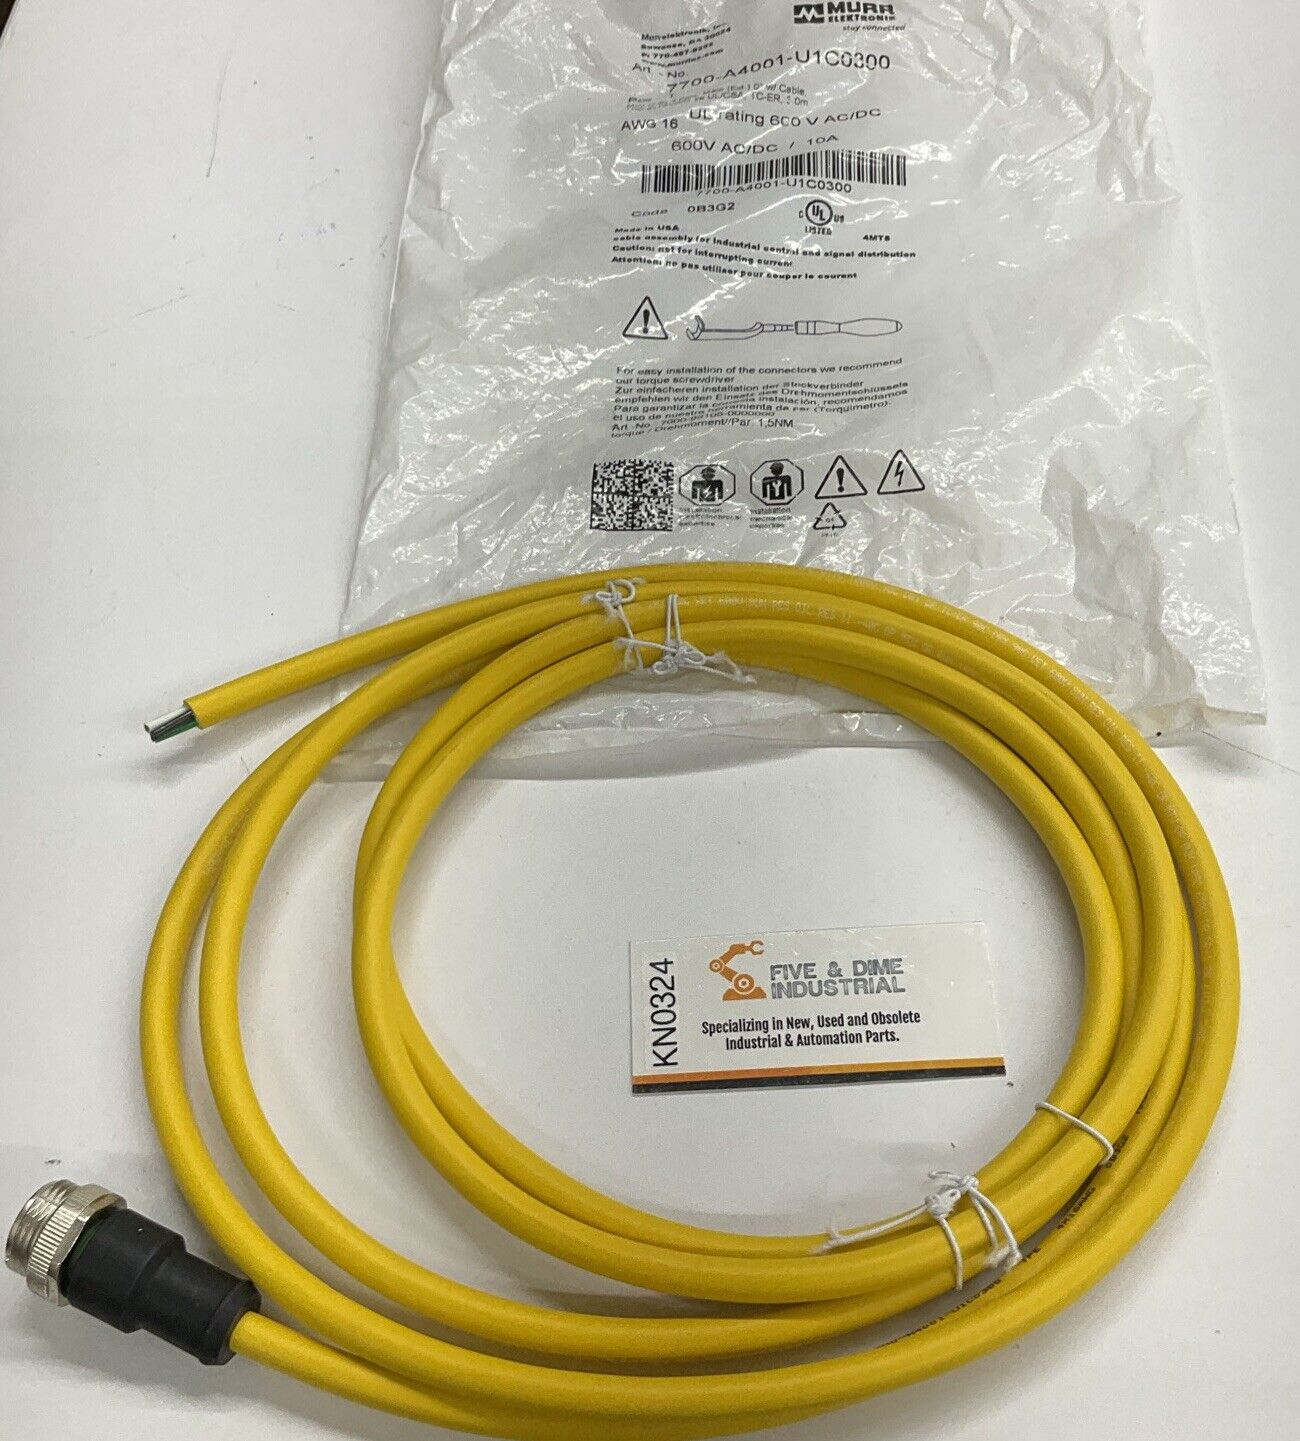 Murr 7700-A4001-U1C0300 7/8 Mini Male Single-End 4-Pole 3-Meter Cable (CBL110)